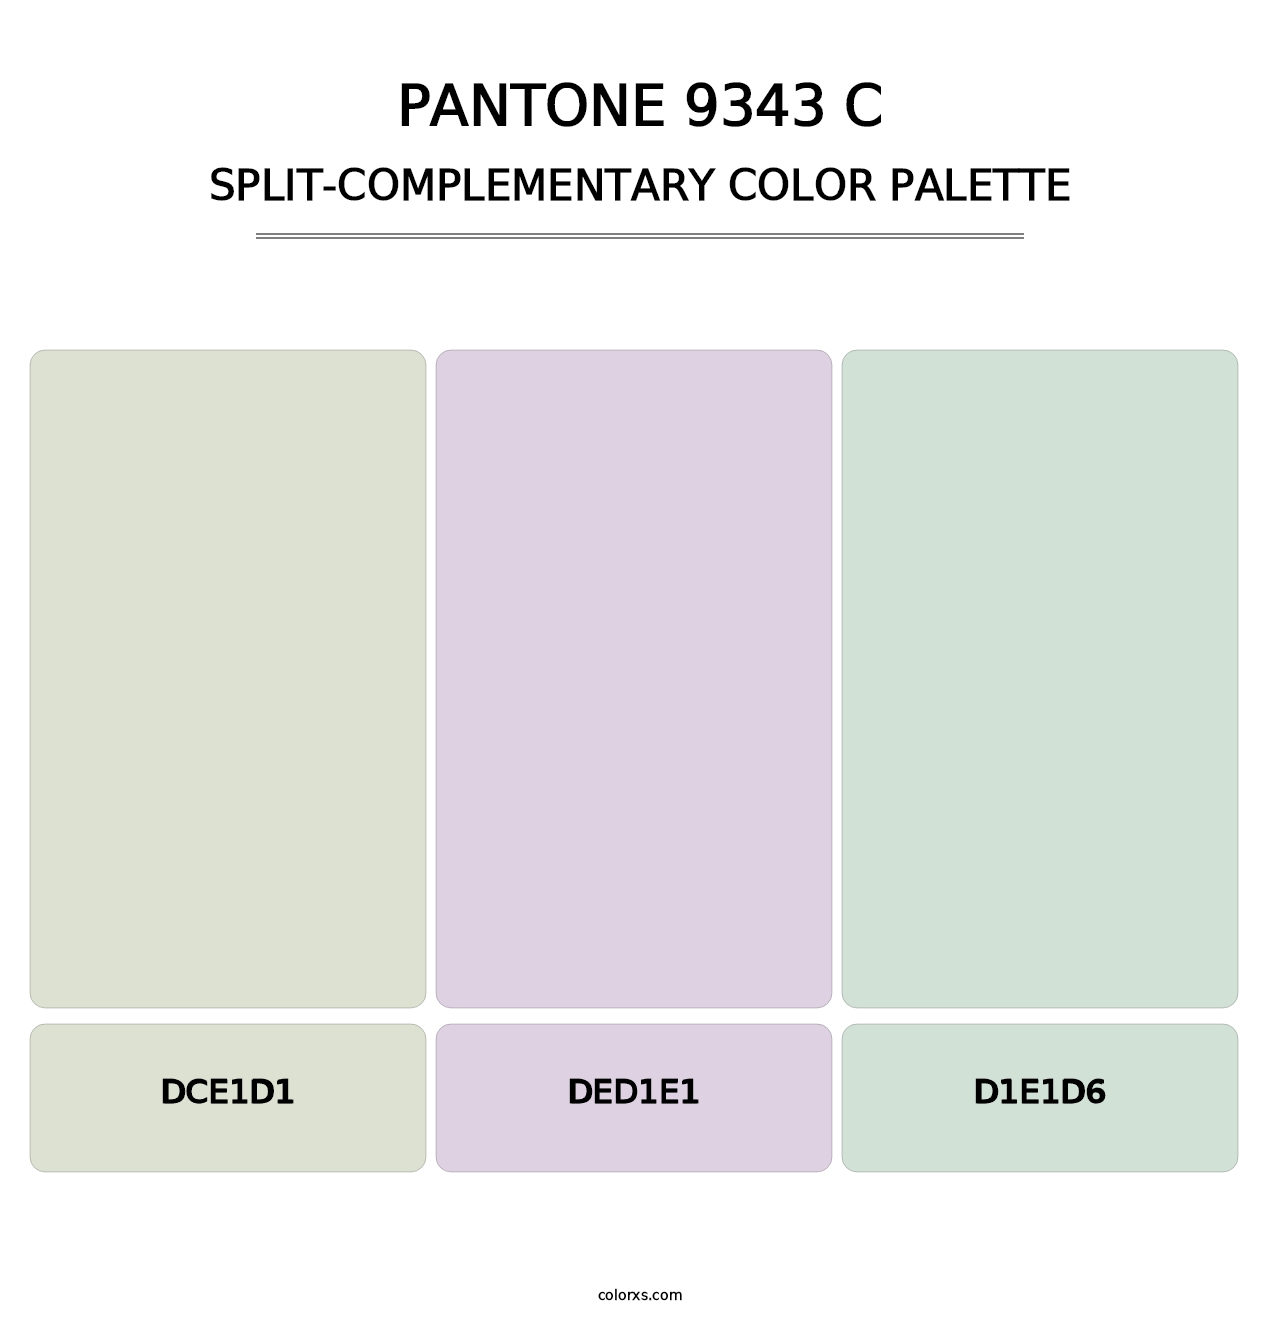 PANTONE 9343 C - Split-Complementary Color Palette